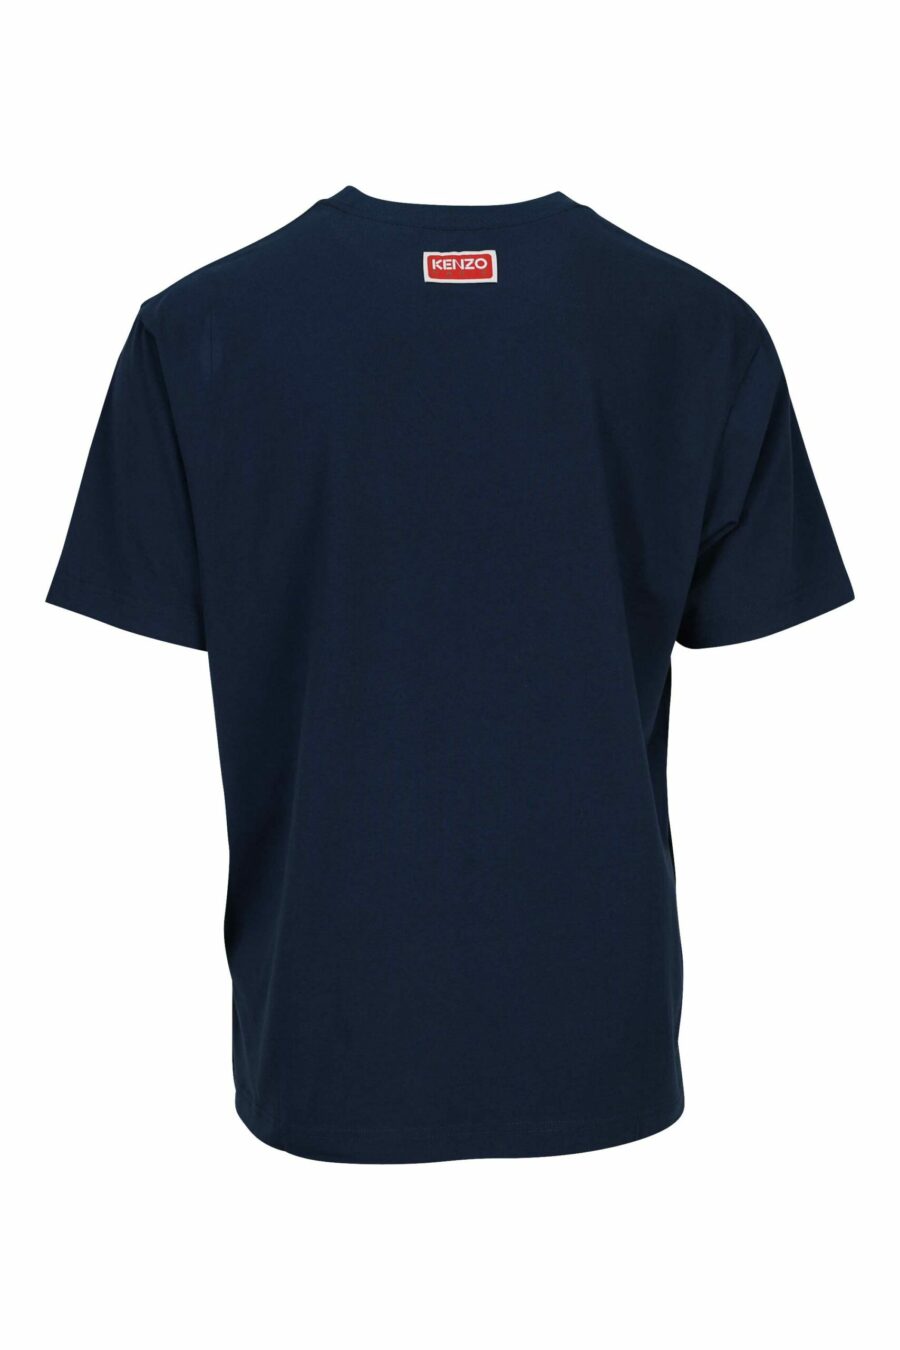 Camiseta "oversize" azul oscuro con maxilogo tigre - 3612230627888 1 scaled